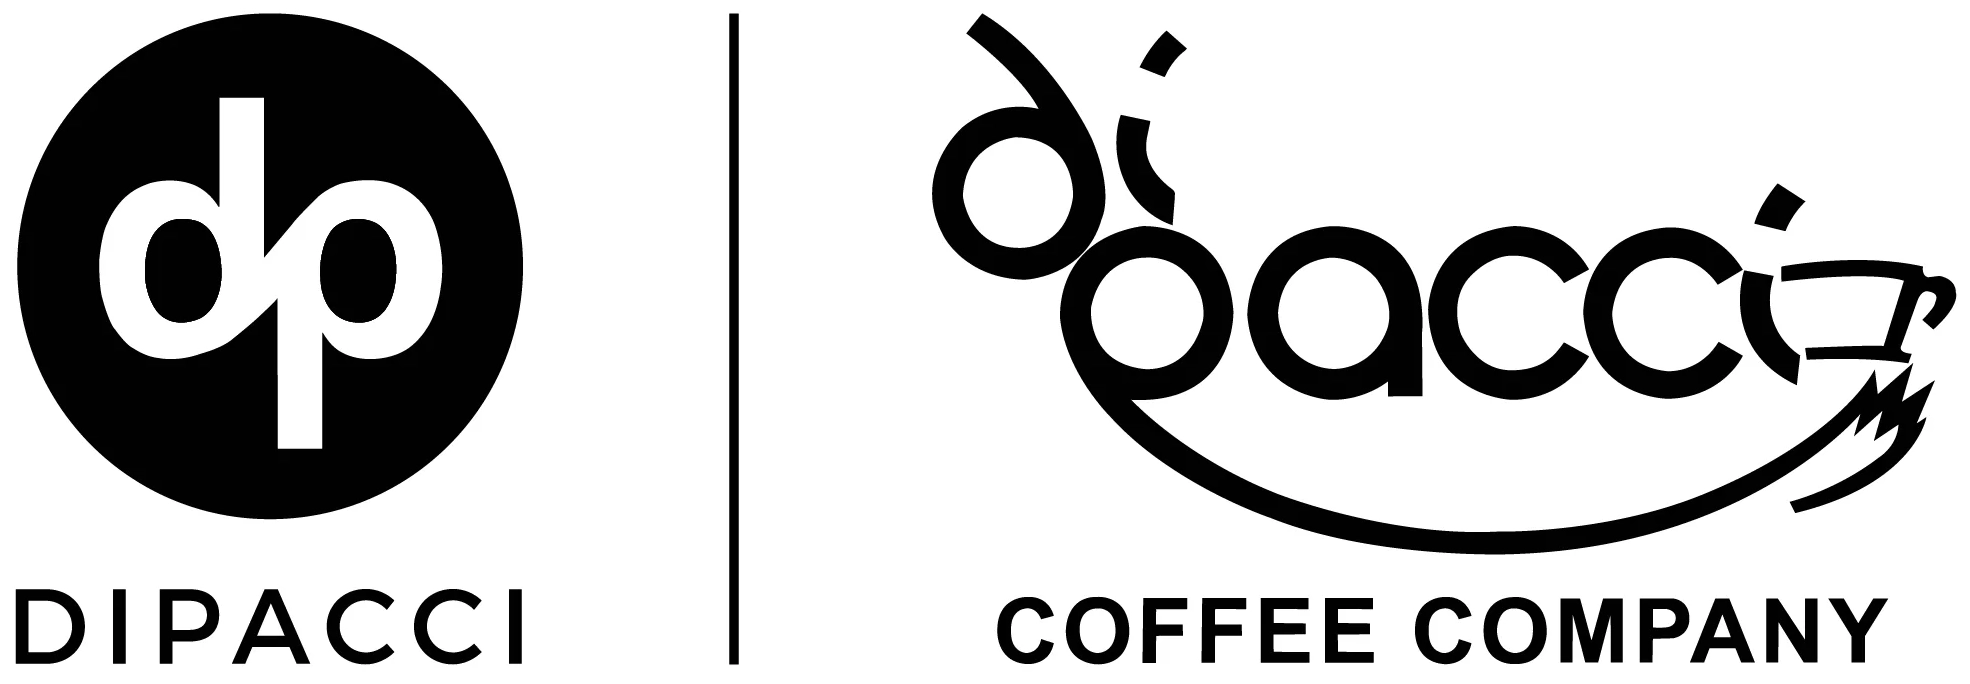 Deliver In Person - Di Pacci Coffee Company